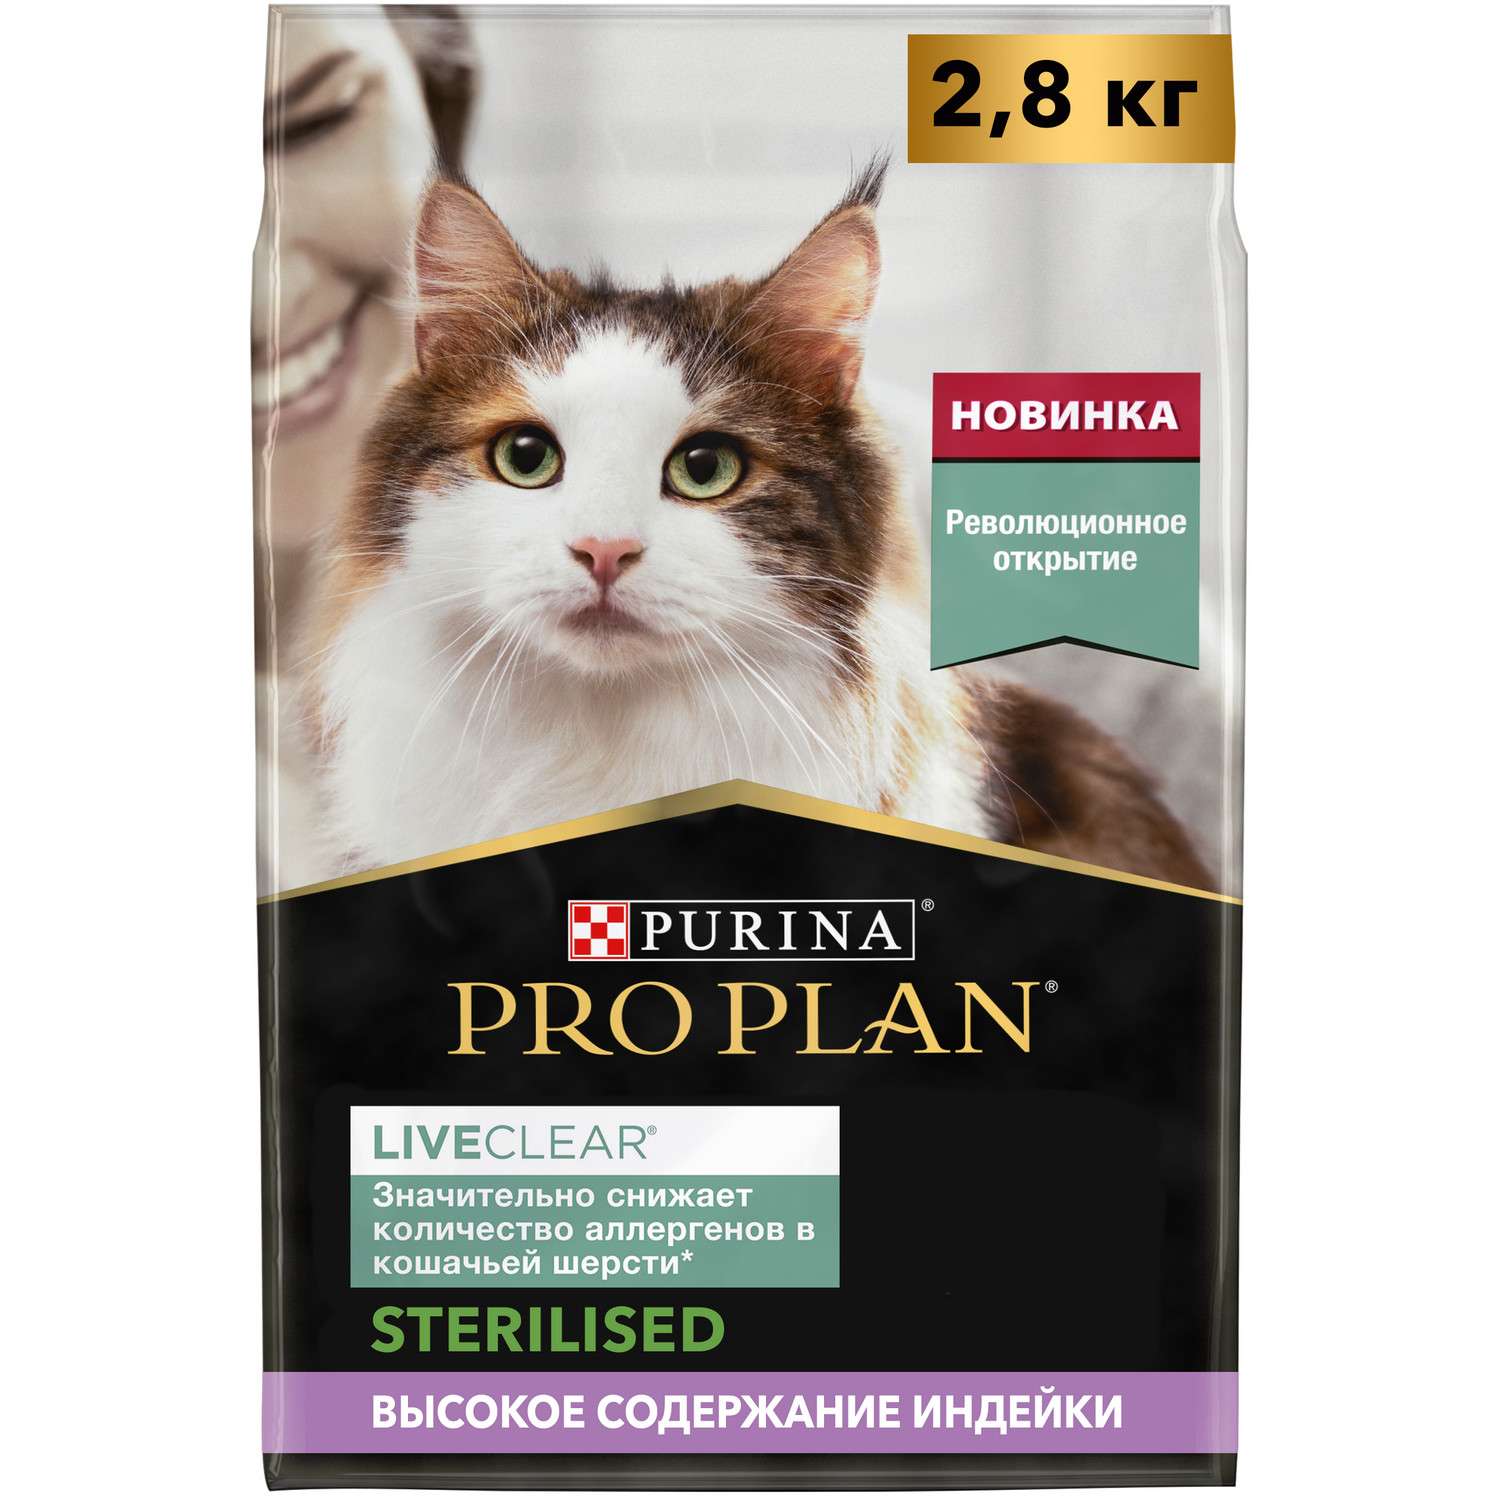 Корм для кошек PRO PLAN Live Clear стерилизованных индейка 2,8 кг купить по  цене 3080 ₽ с доставкой в Москве и России, отзывы, фото